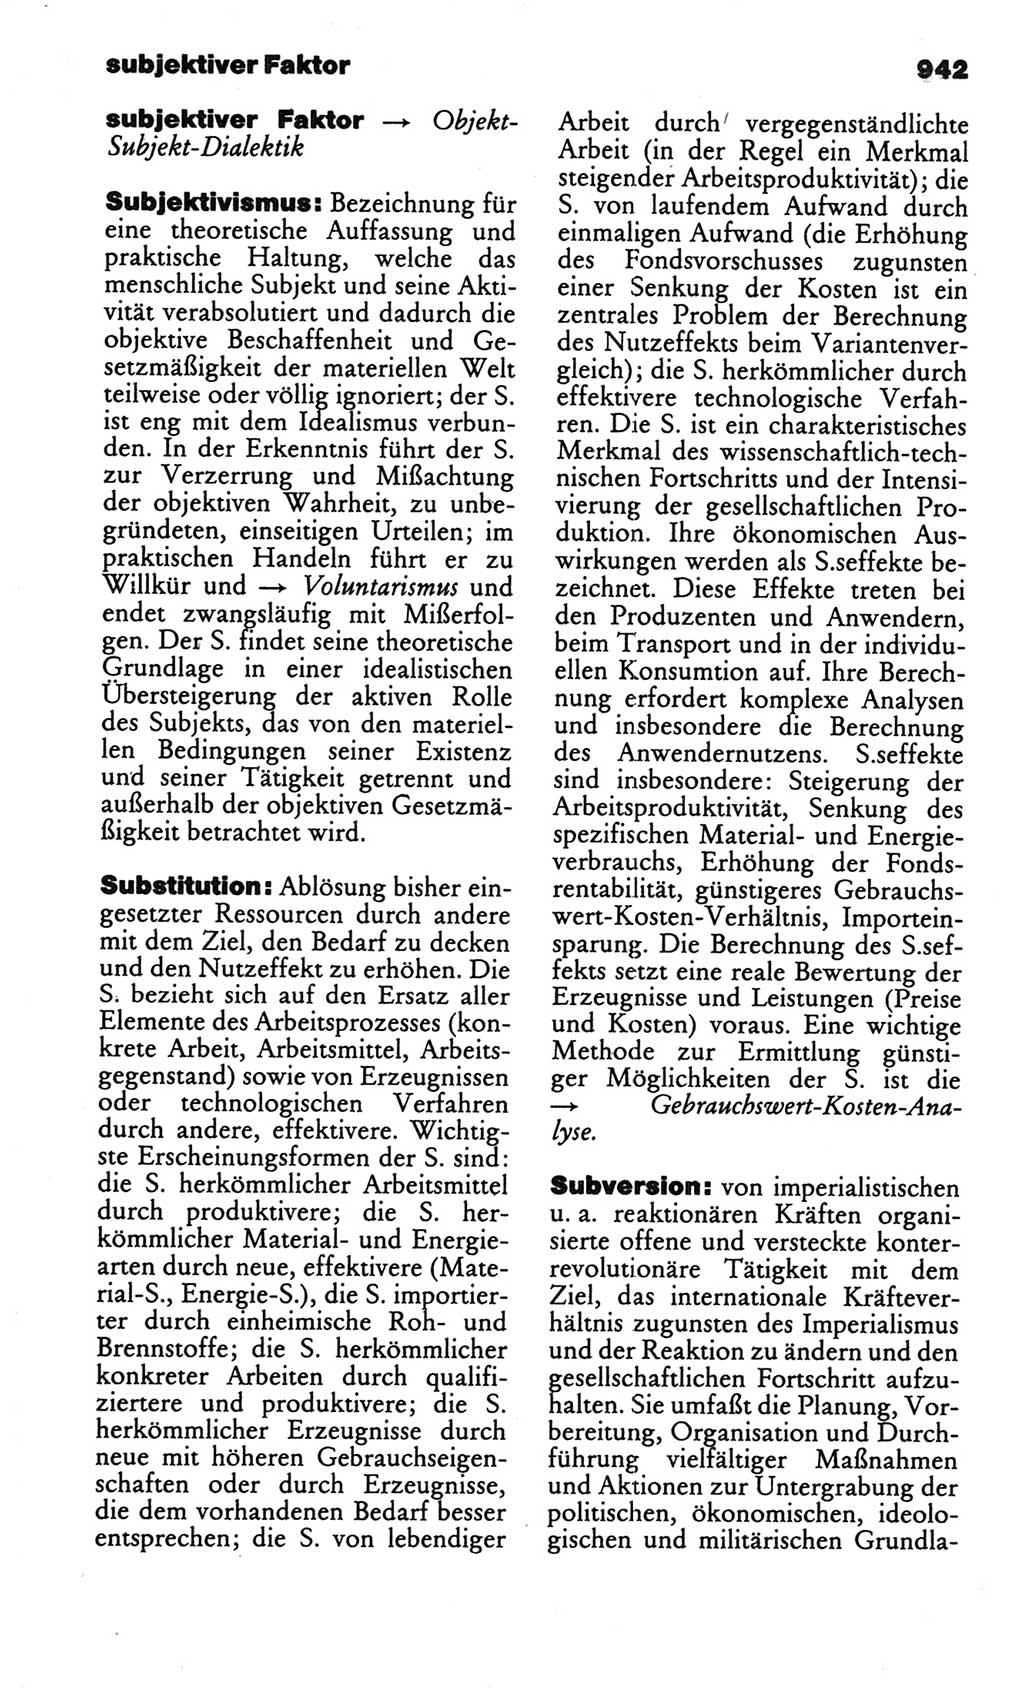 Kleines politisches Wörterbuch [Deutsche Demokratische Republik (DDR)] 1986, Seite 942 (Kl. pol. Wb. DDR 1986, S. 942)